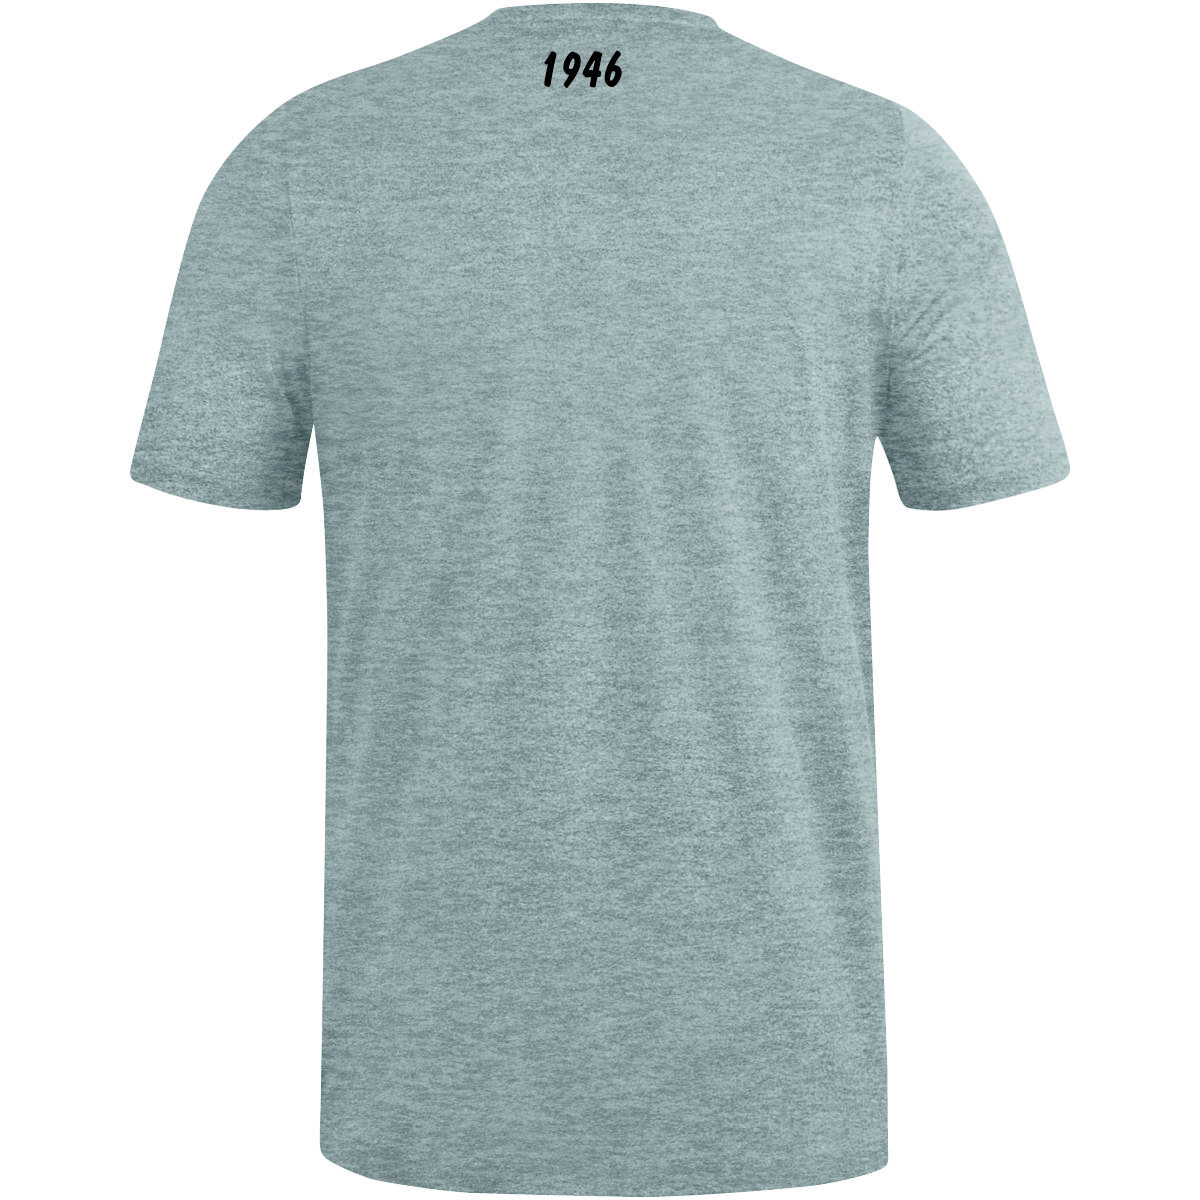 SCSV 1946 T-Shirt Premium